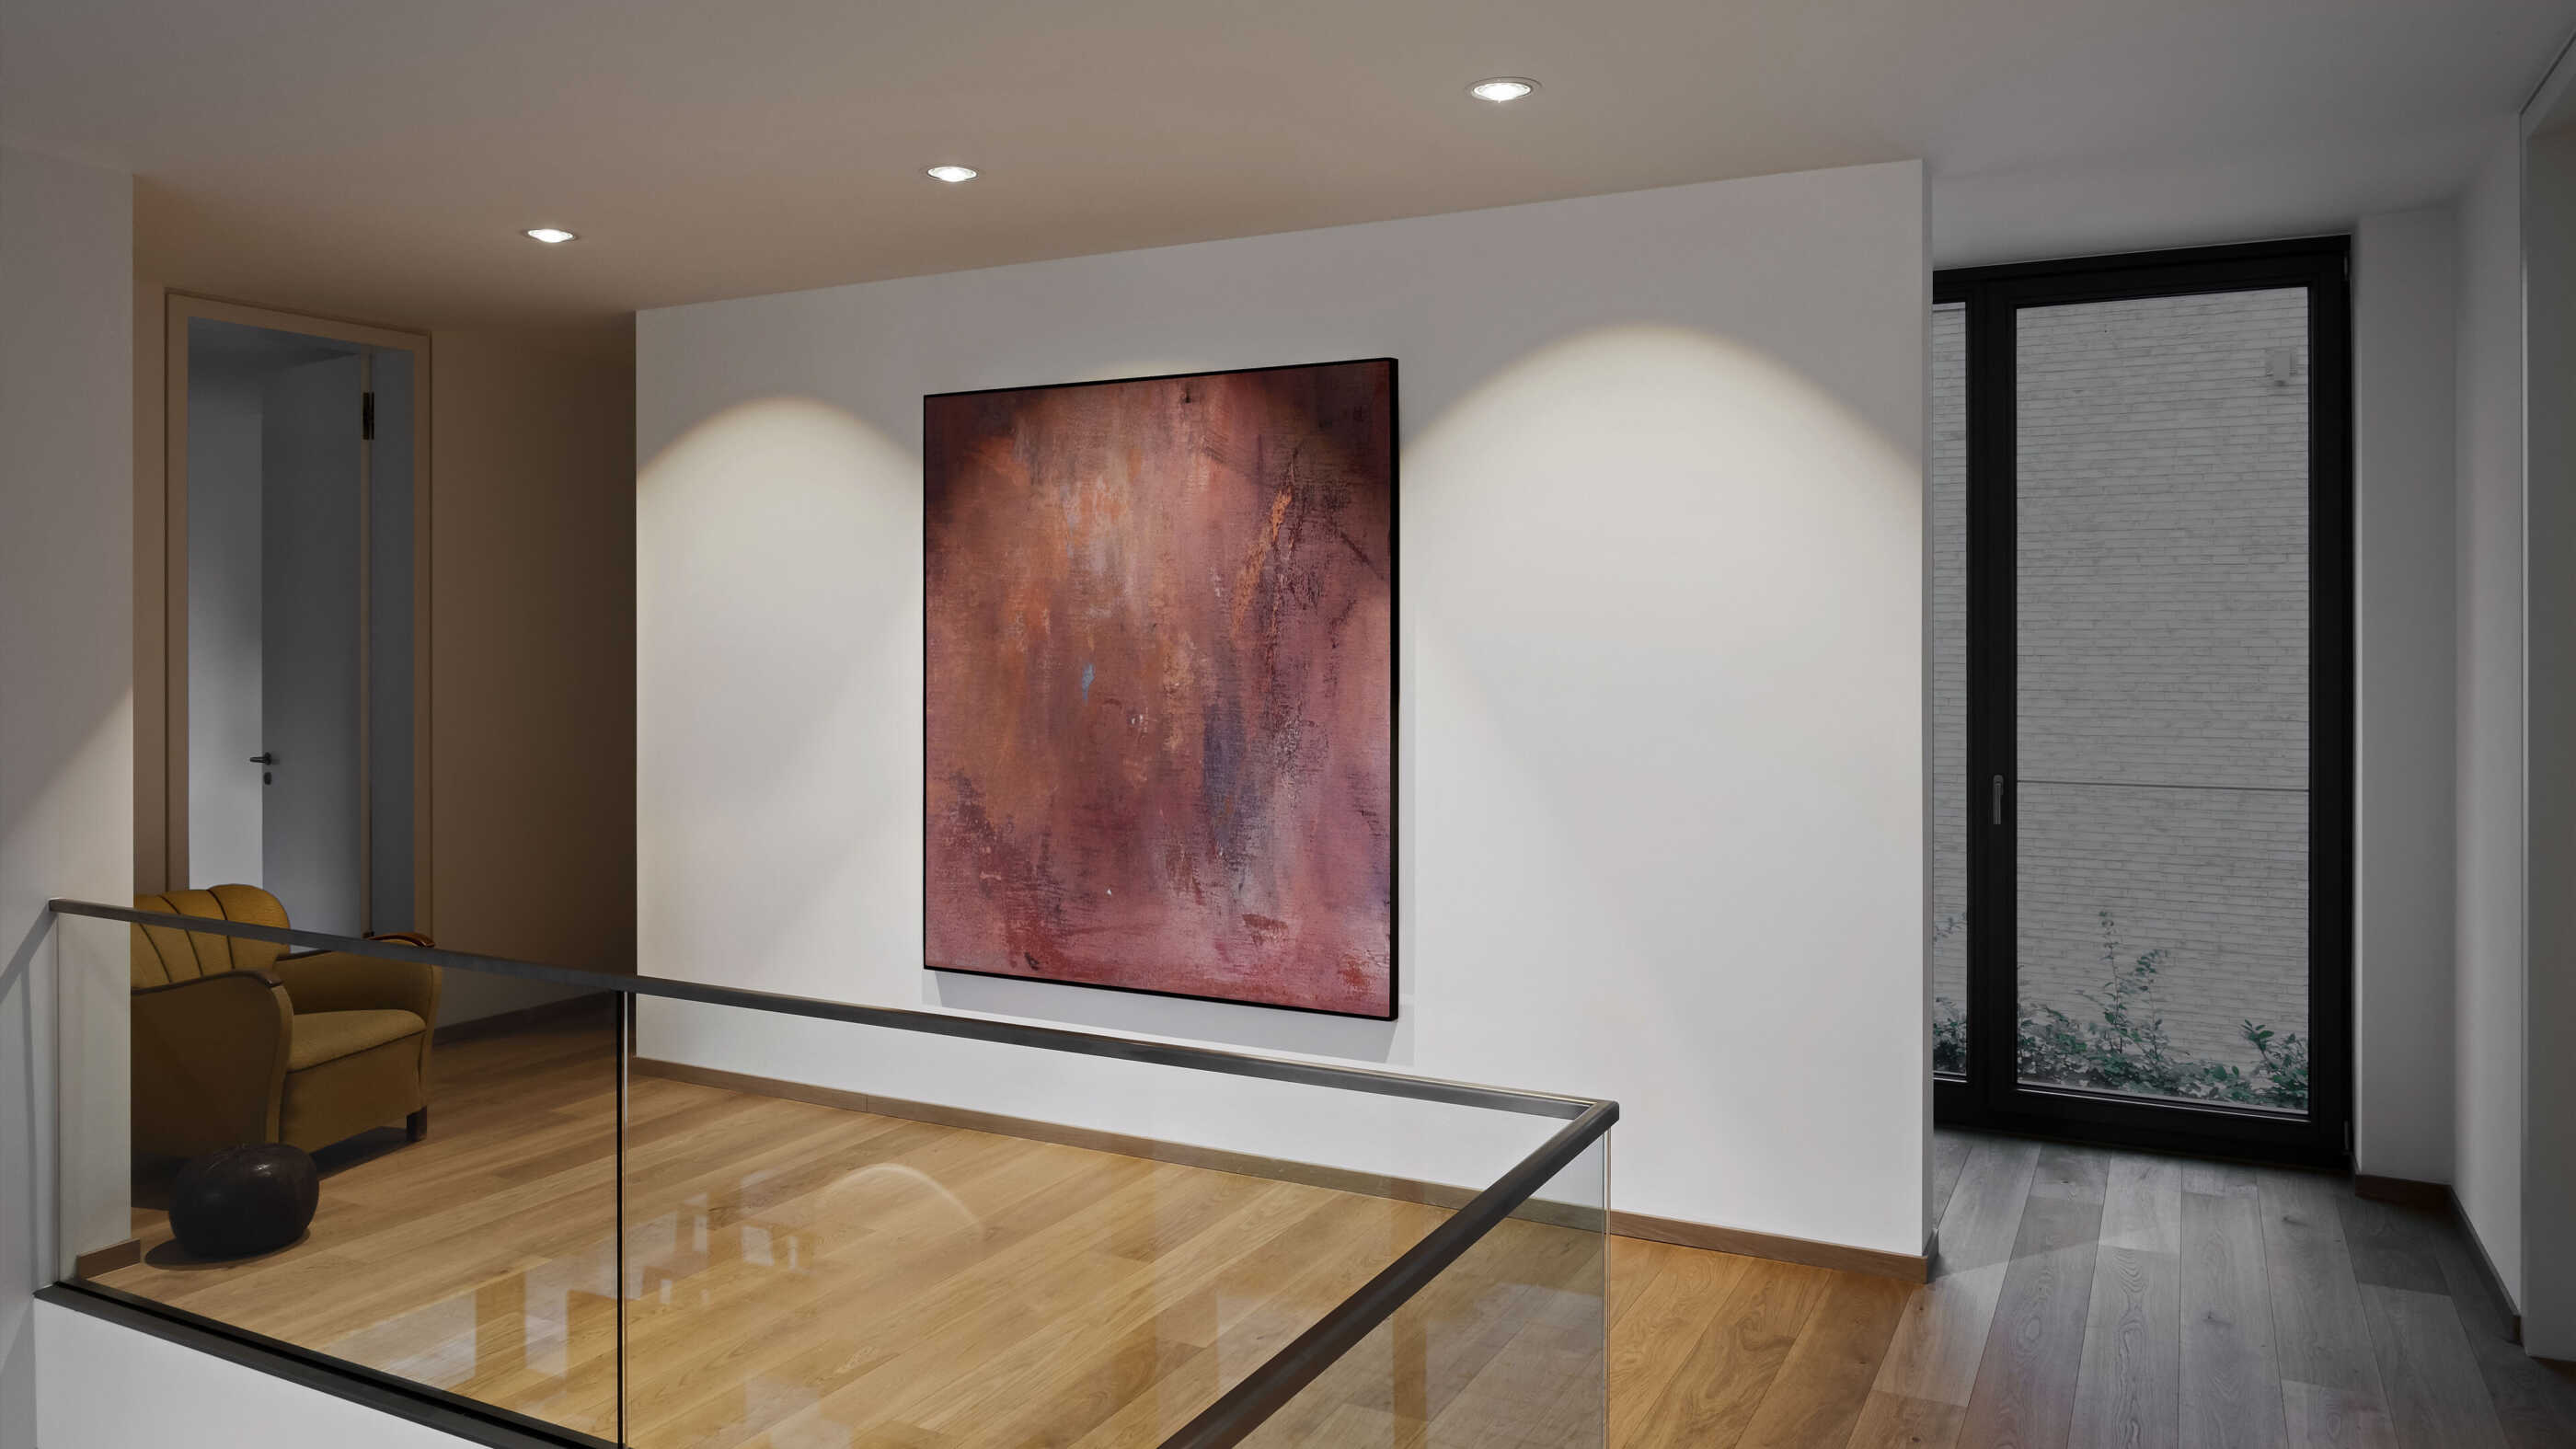 Eine Galerie in einem Flur: Drei Downlights beleuchten eine Wand mit einem großformatigen Bild. (Foto: Prediger Lichtberater)